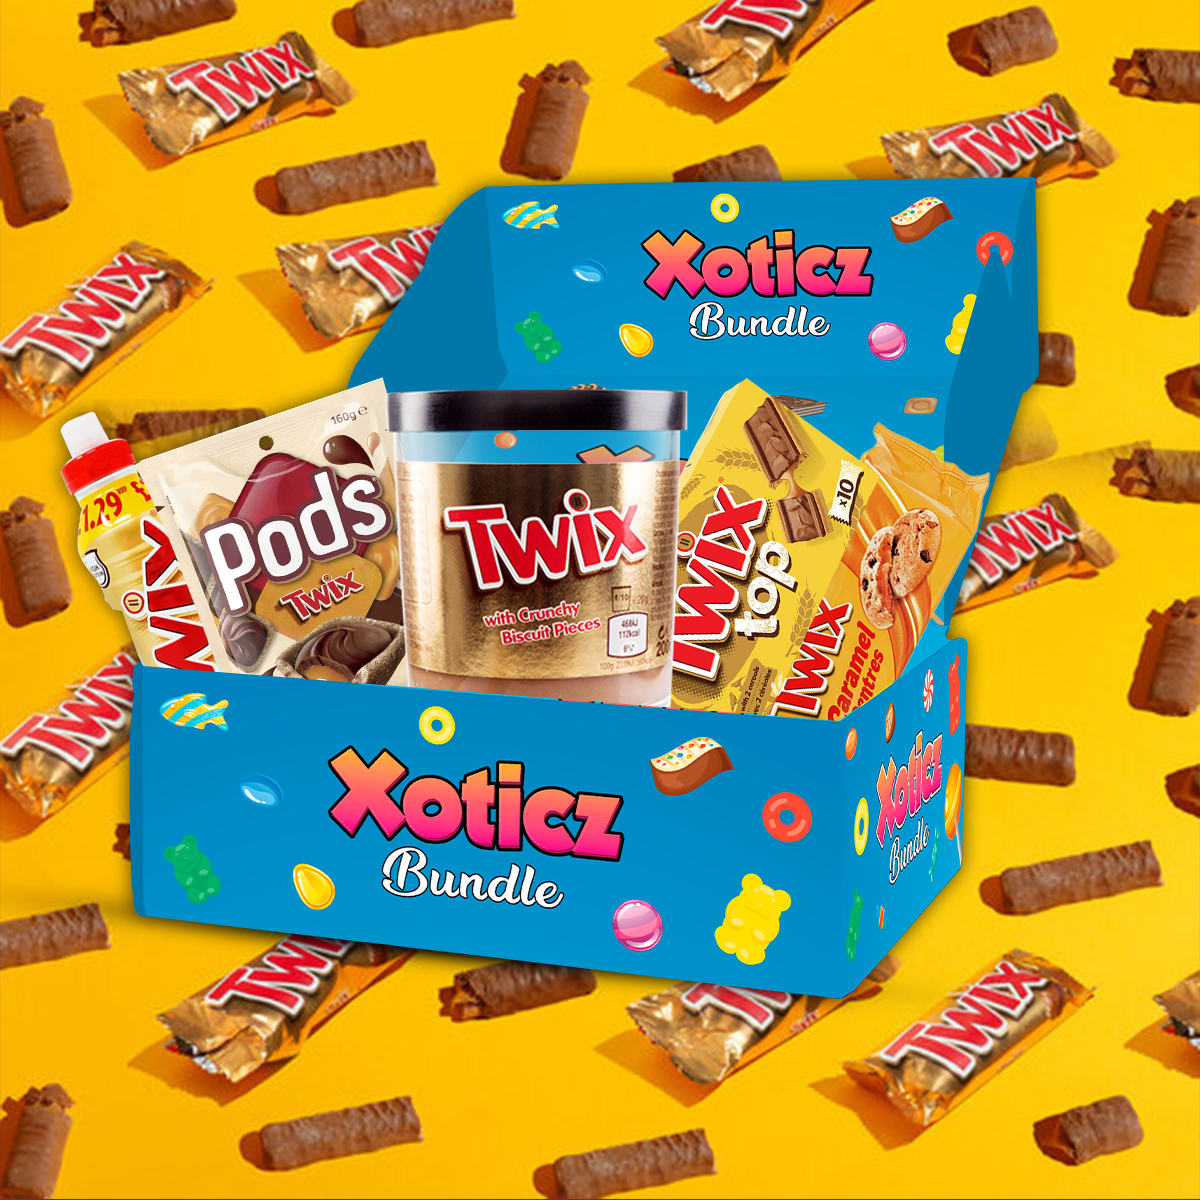 Twix Bundle Box – Xotic Treatz